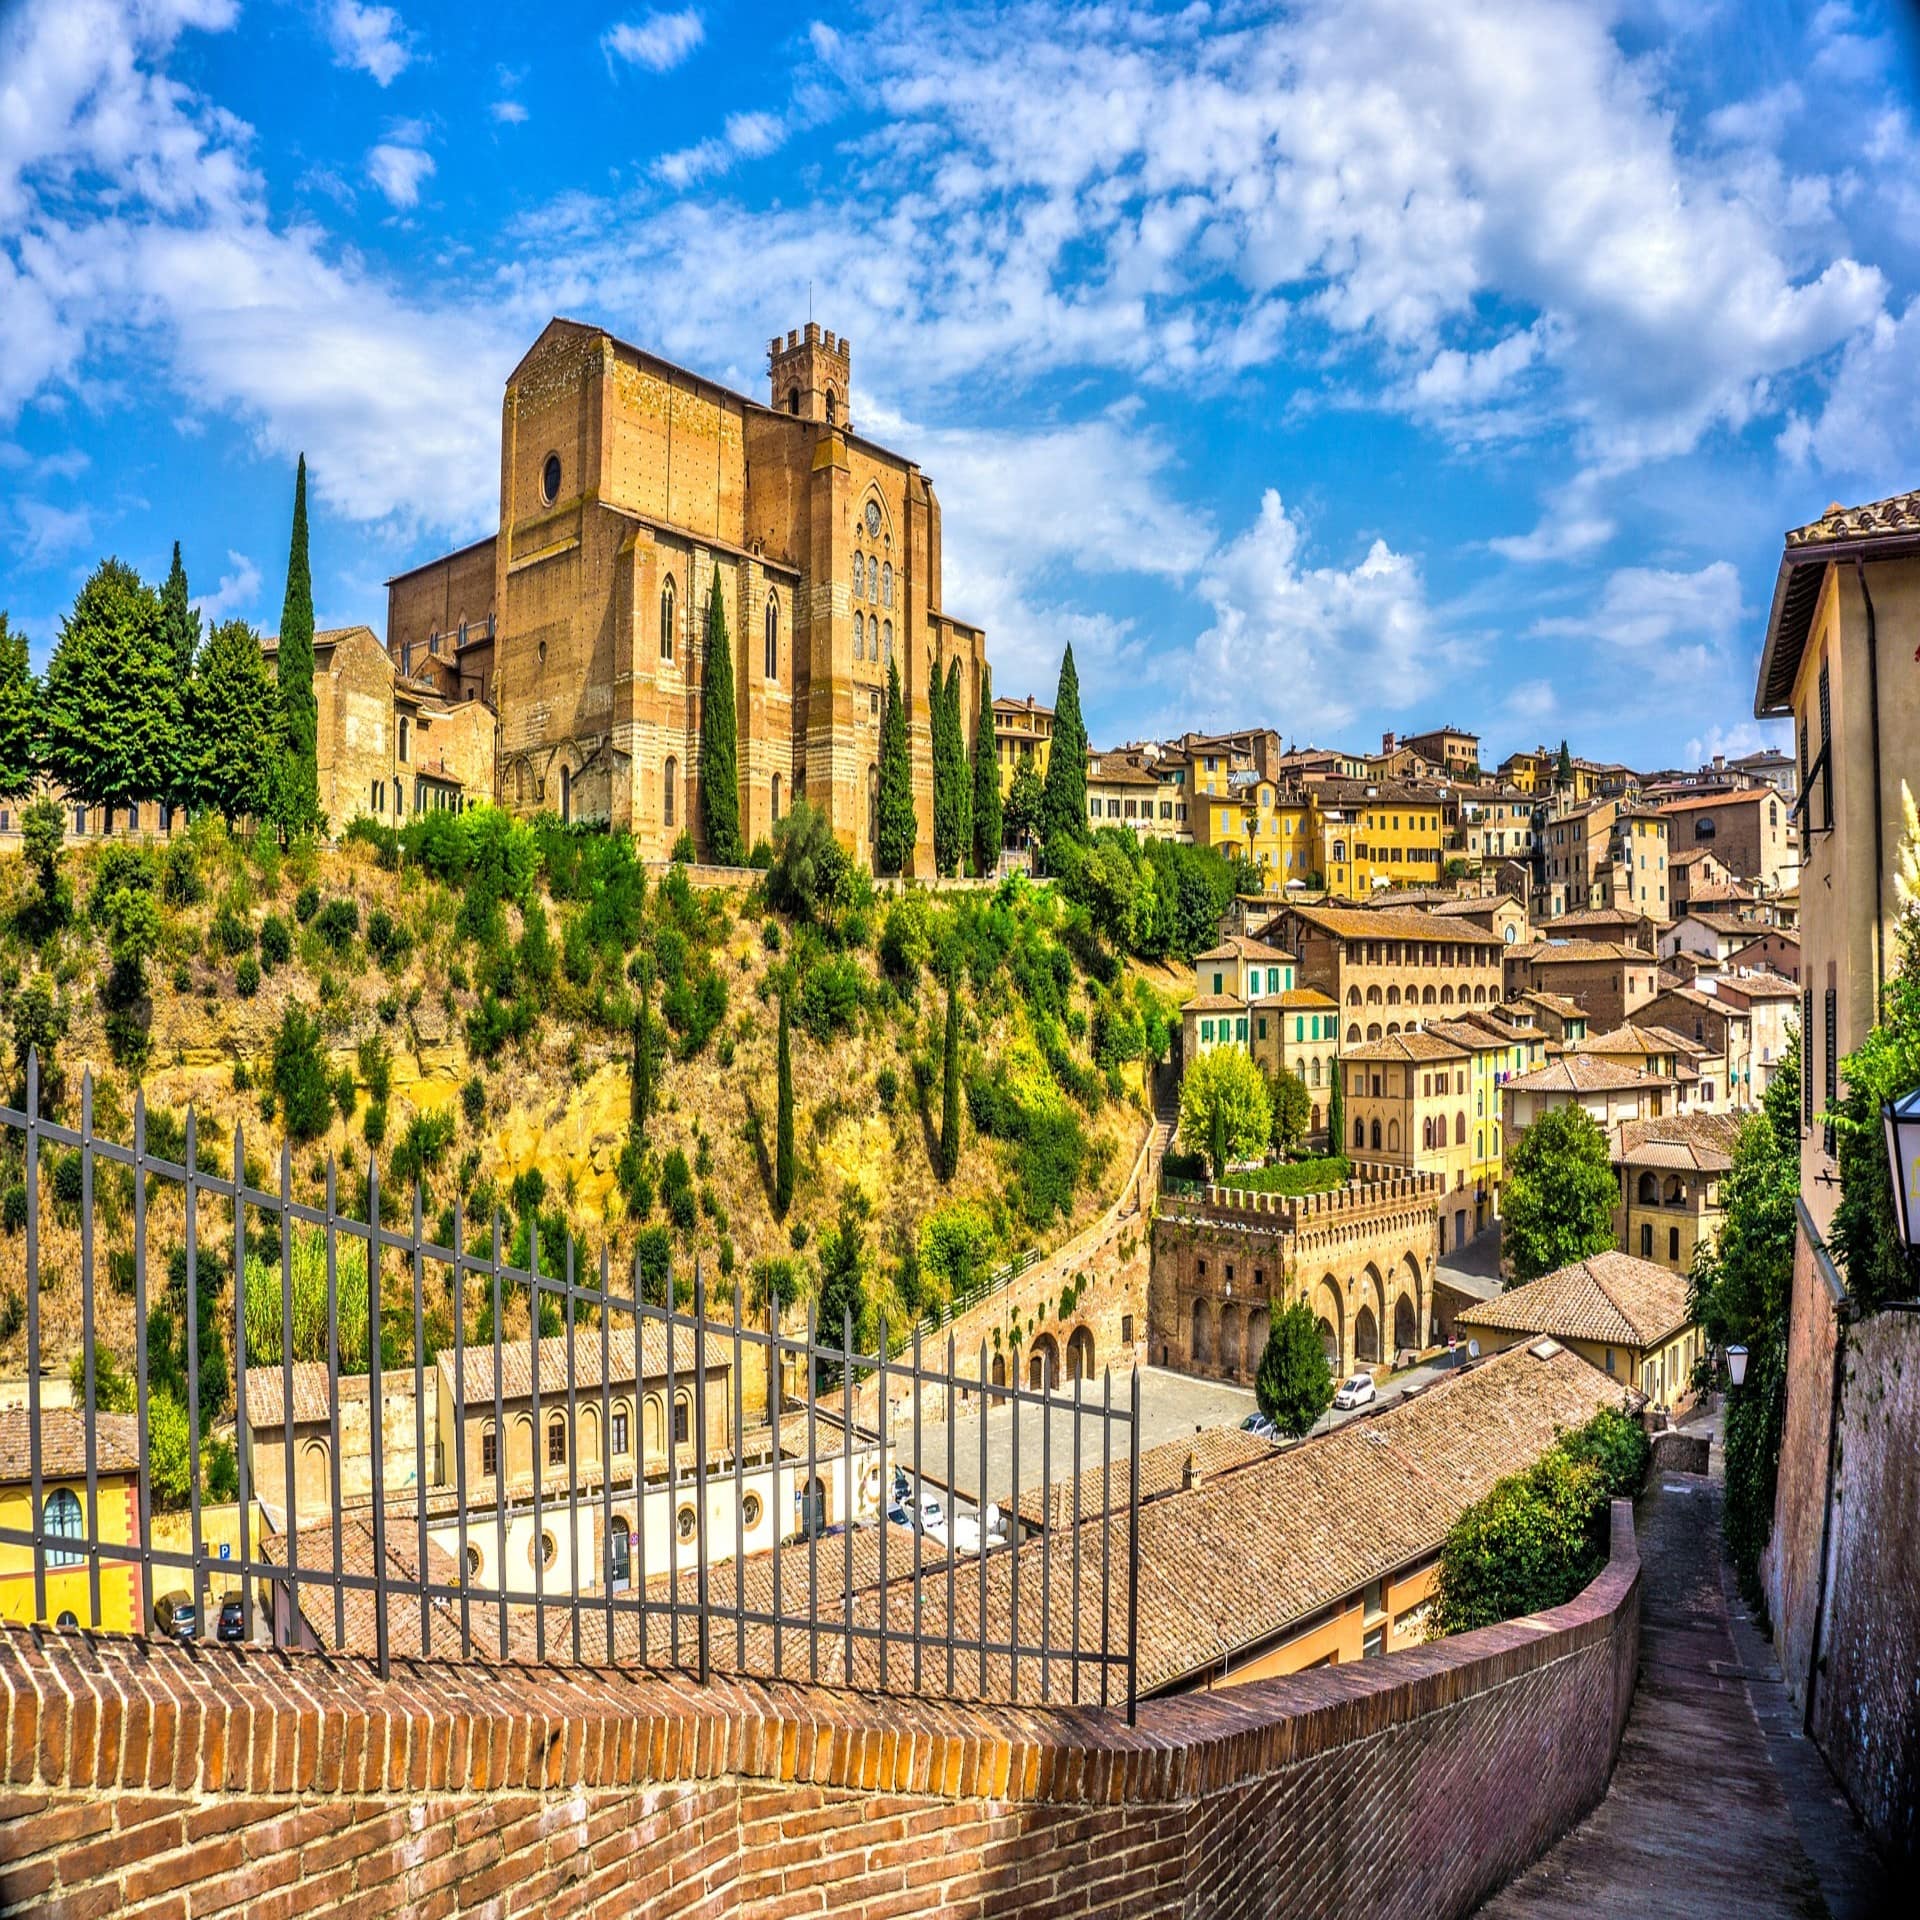 Blick auf das Dorf Siena mit einer Kathedrale aus Sandstein